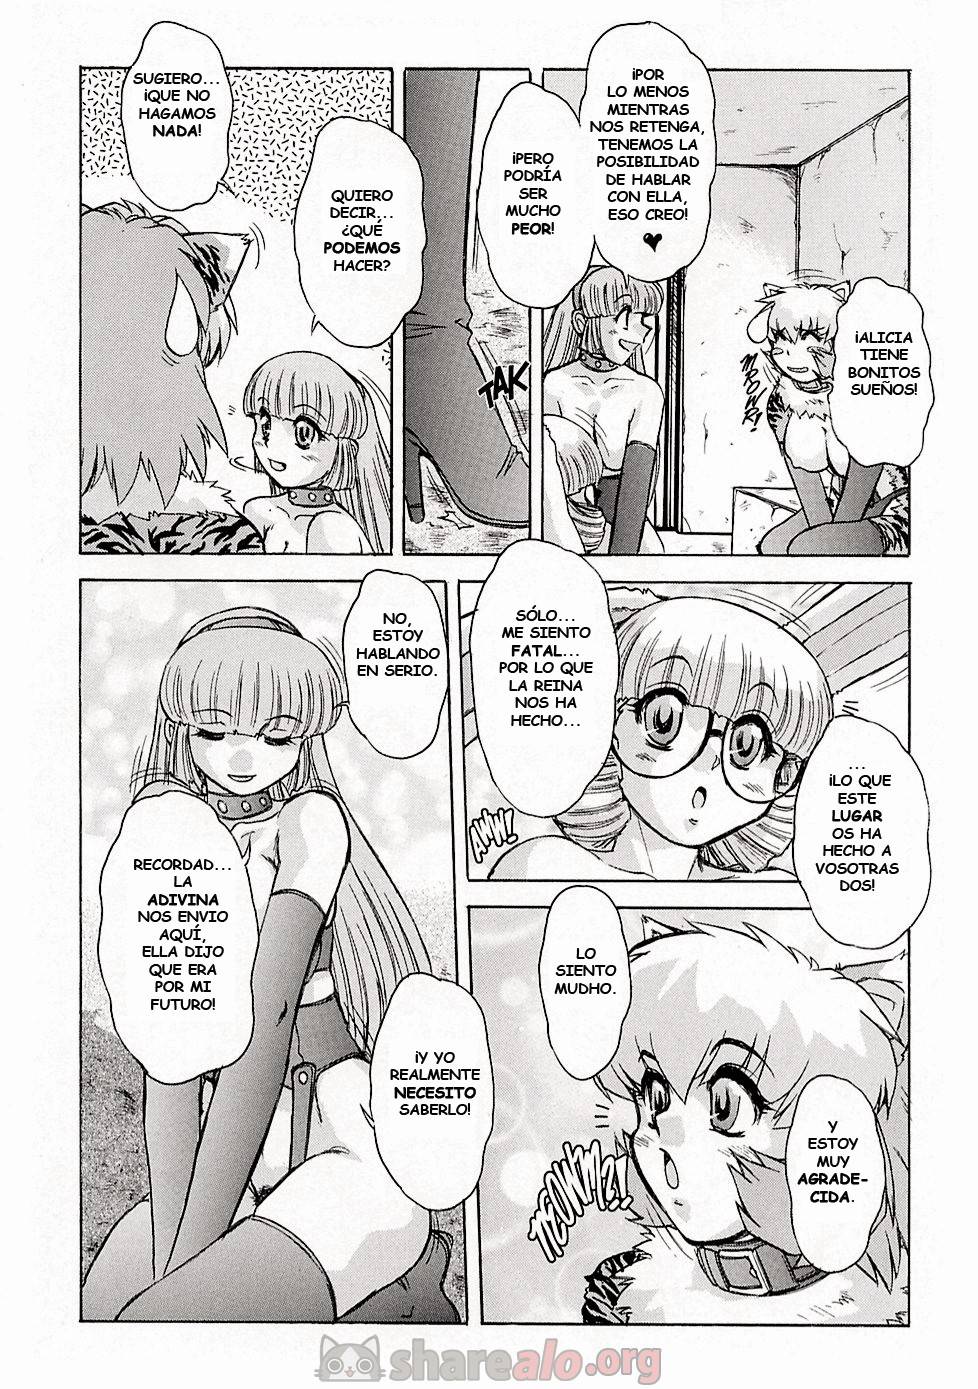 Alice Extreme (Parte #7 y #8) - 5 - Comics Porno - Hentai Manga - Cartoon XXX